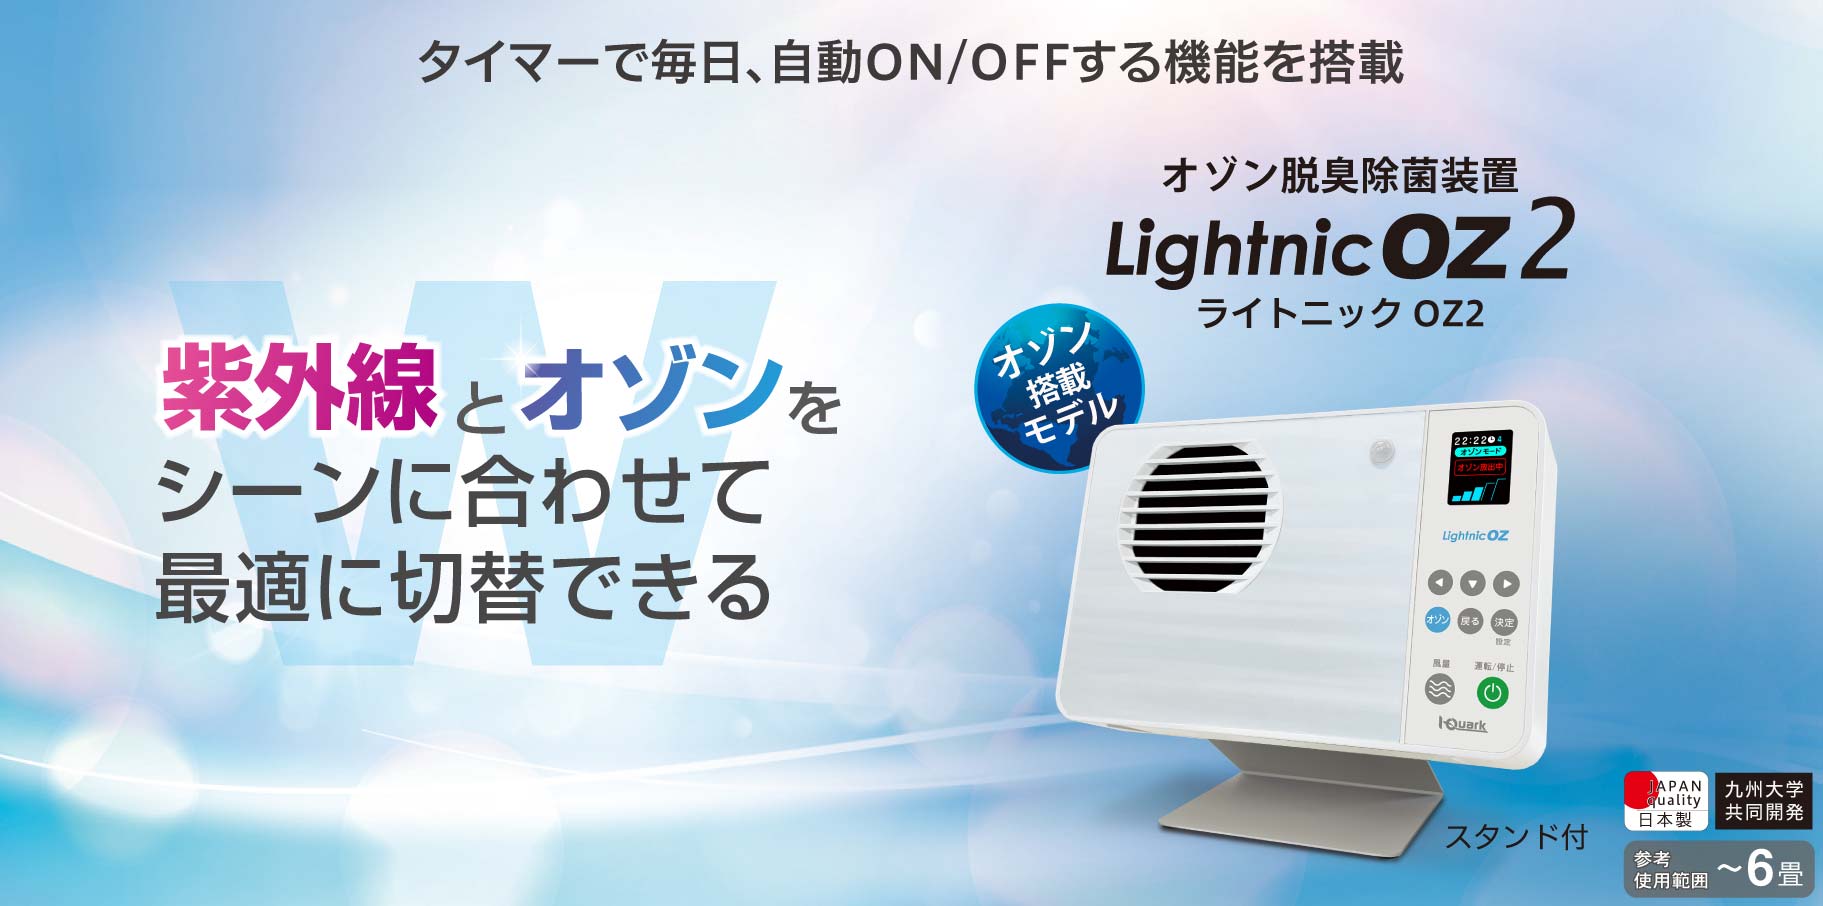 【製品画像】オゾン空気清浄機ライトニックOZ2は紫外線とオゾンをシーンに合わせて最適に切替できる。日本製。6畳までのエリアで使用